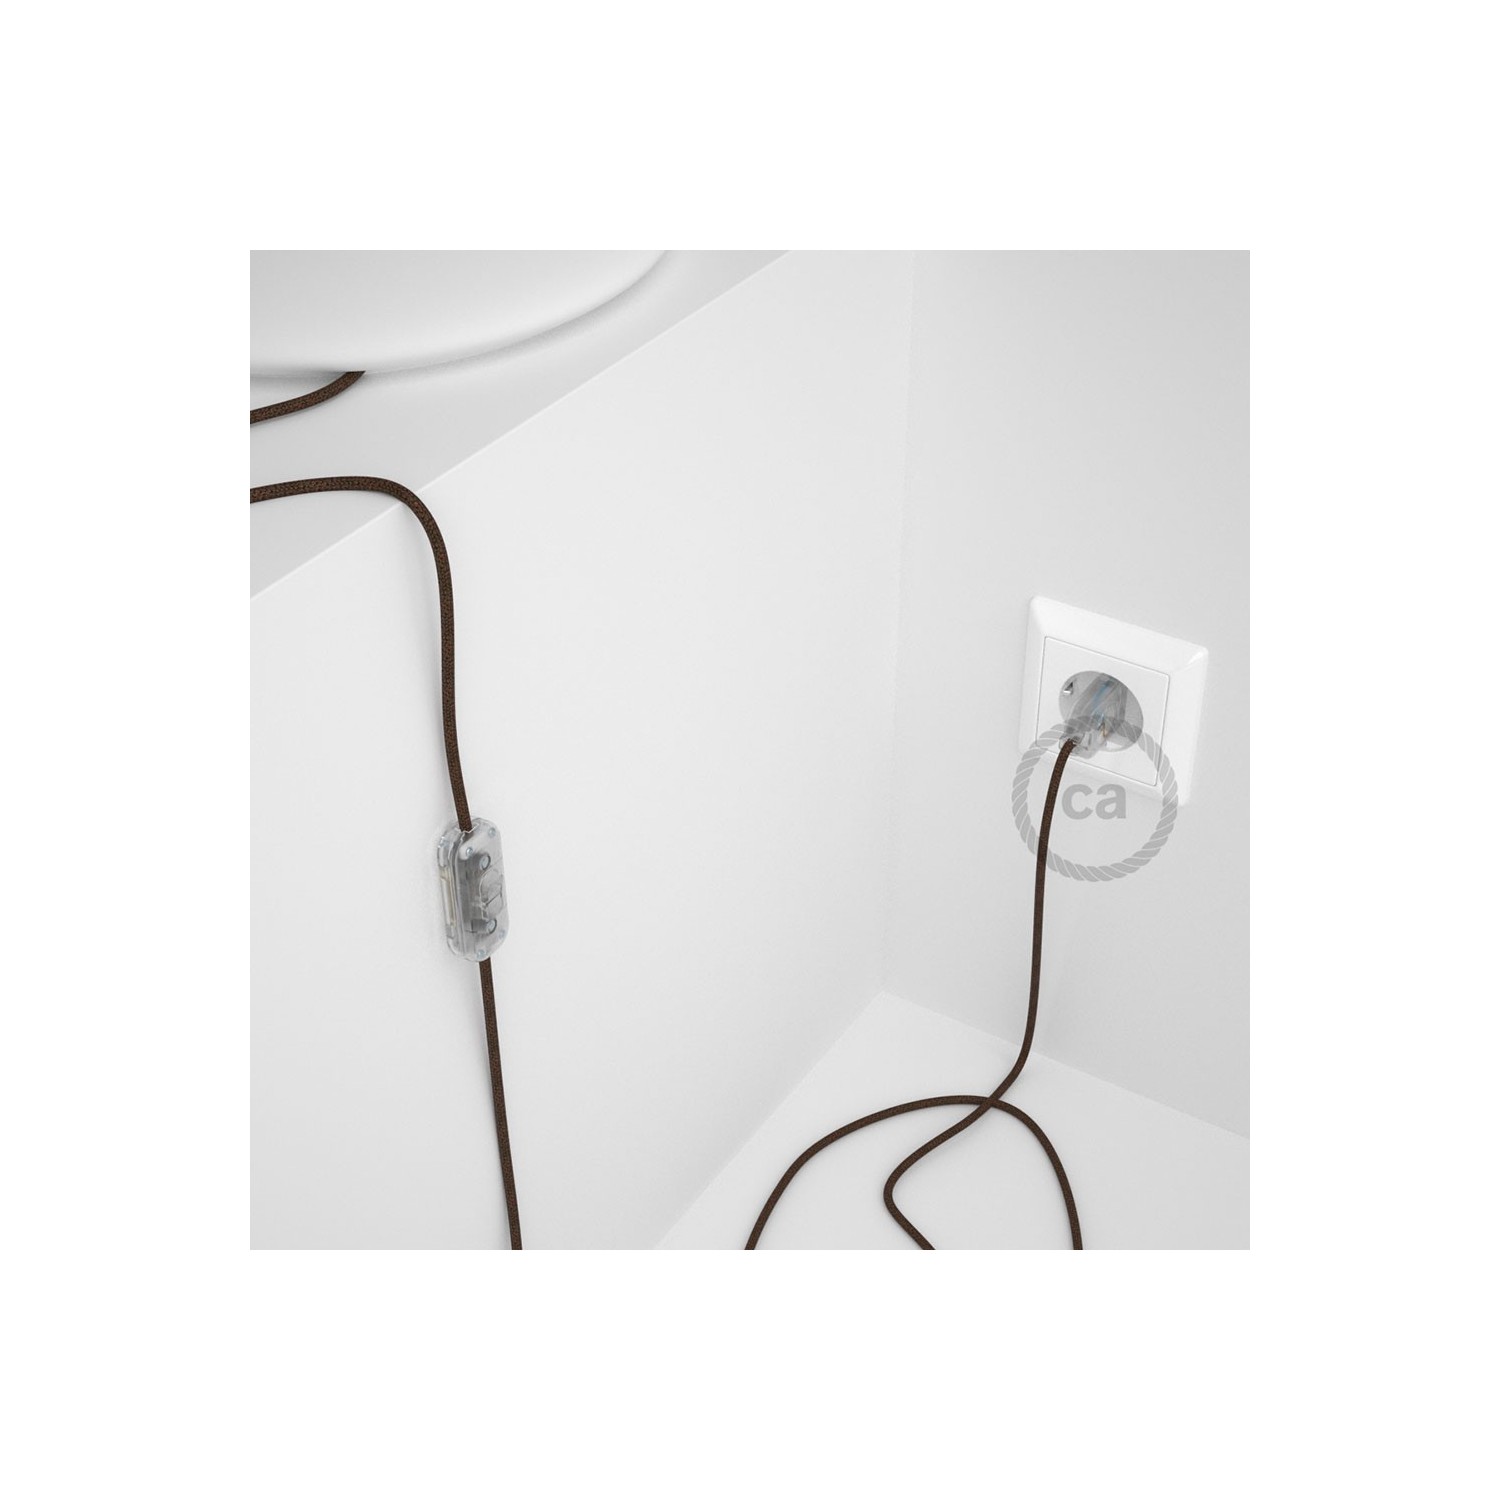 Cordon pour lampe, câble RL13 Effet Soie Paillettes Marron 1,80 m. Choisissez la couleur de la fiche et de l'interrupteur!